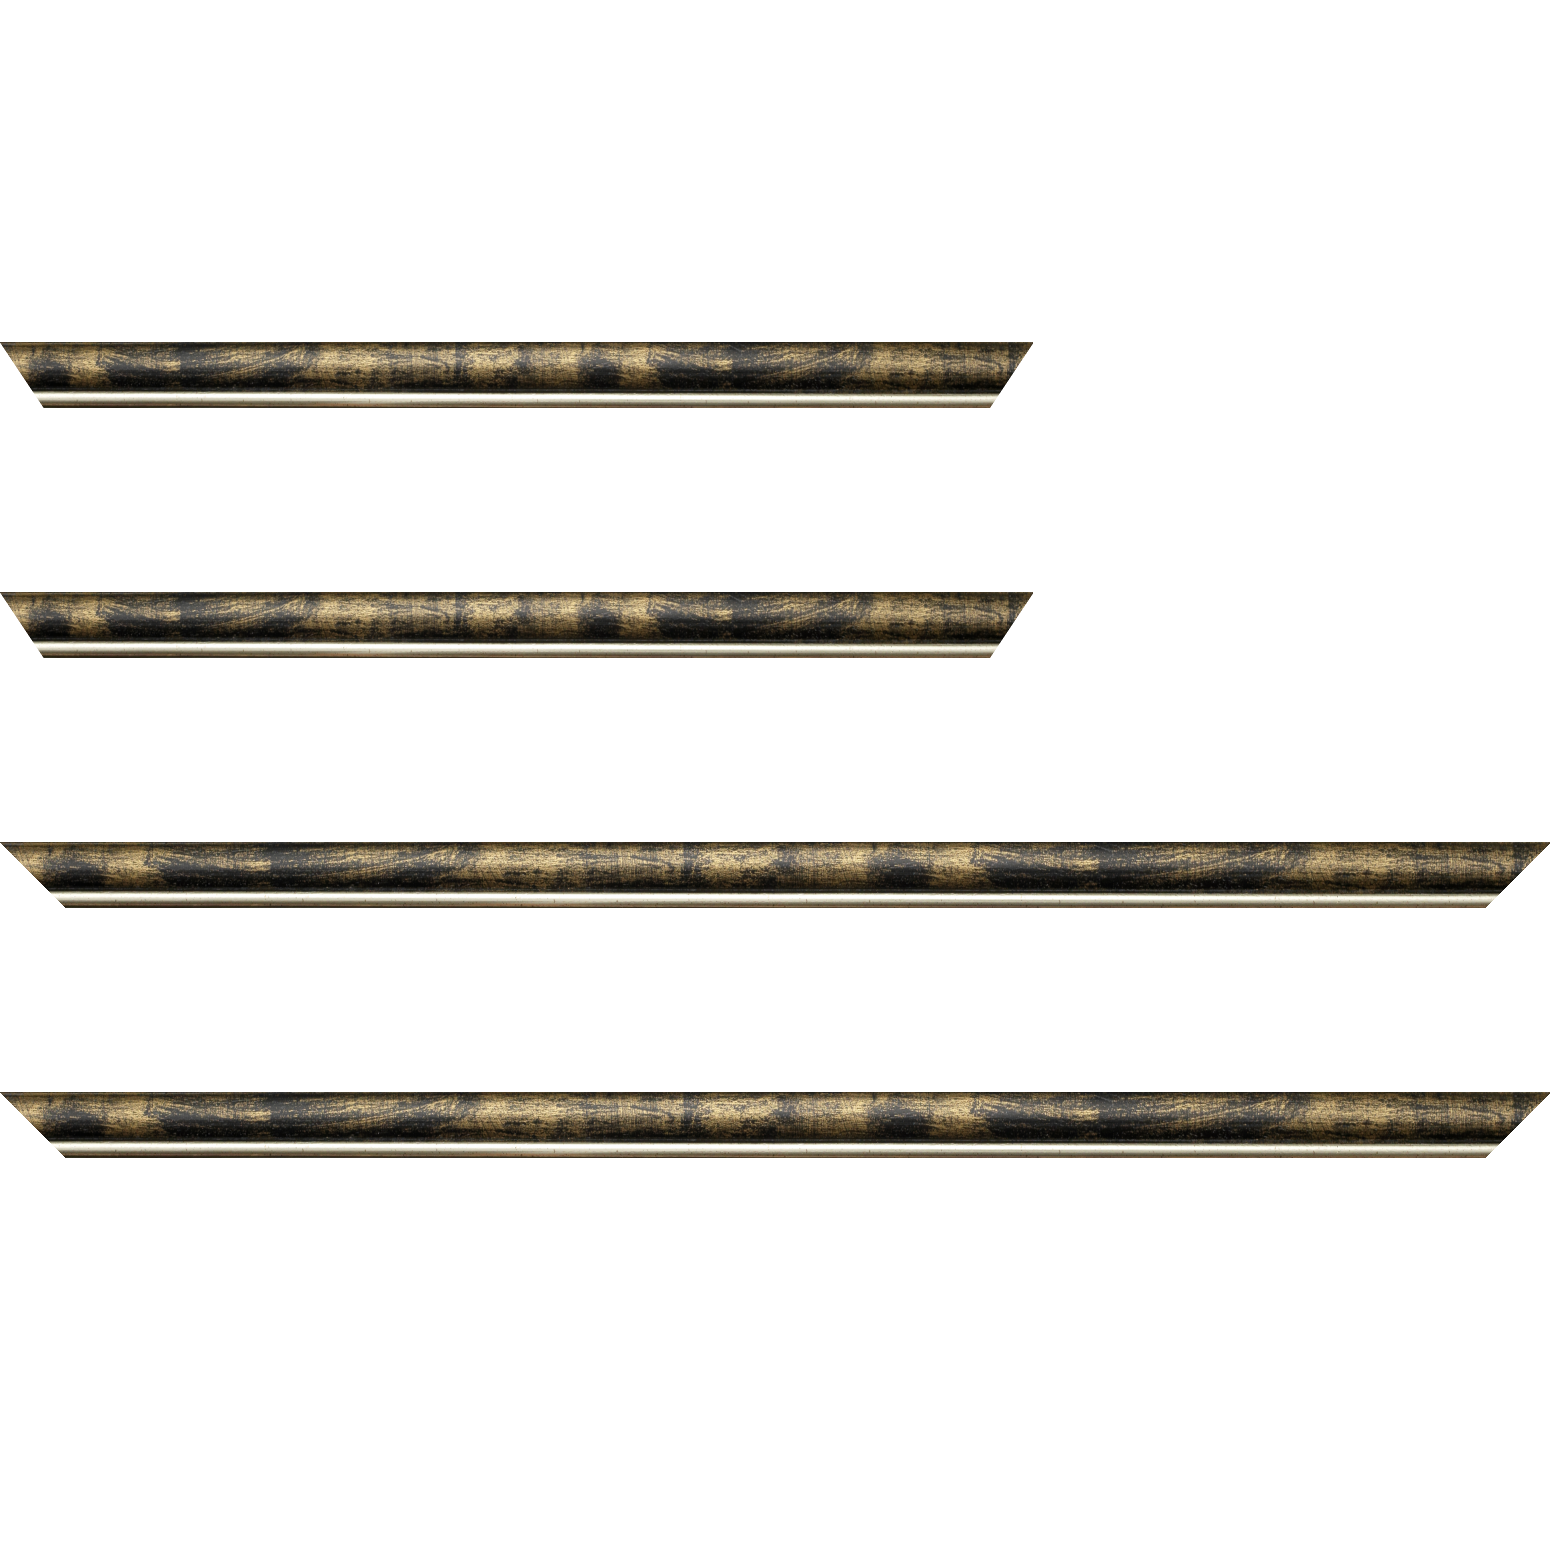 Baguette bois profil arrondi largeur 2.1cm  couleur noir fond or filet argent chaud